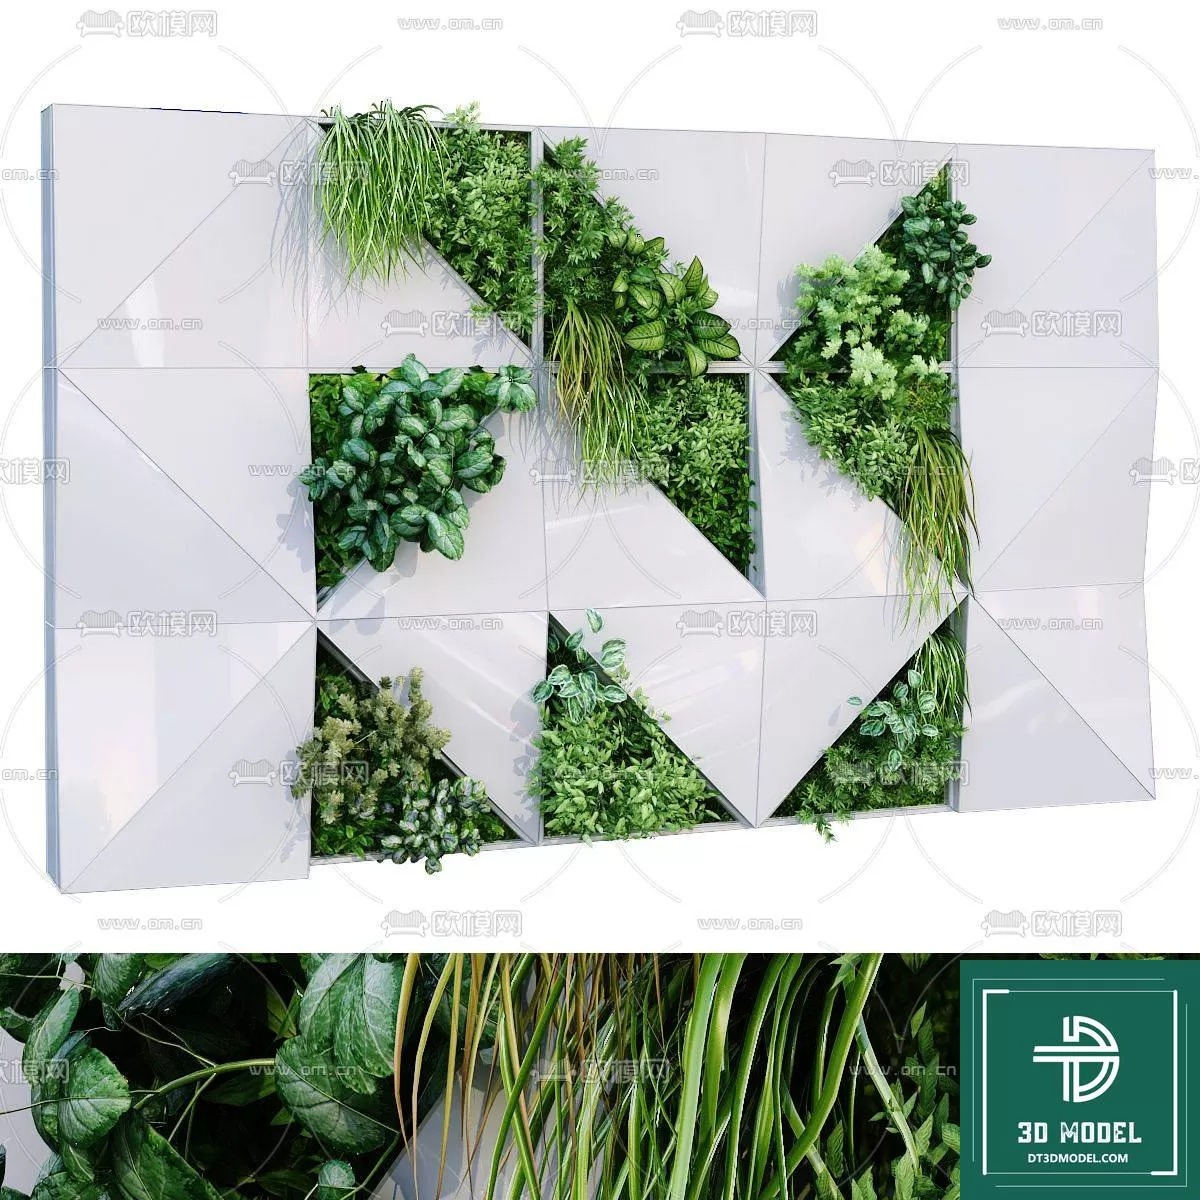 VERTICAL GARDEN – FITOWALL PLANT 3D MODEL – 150